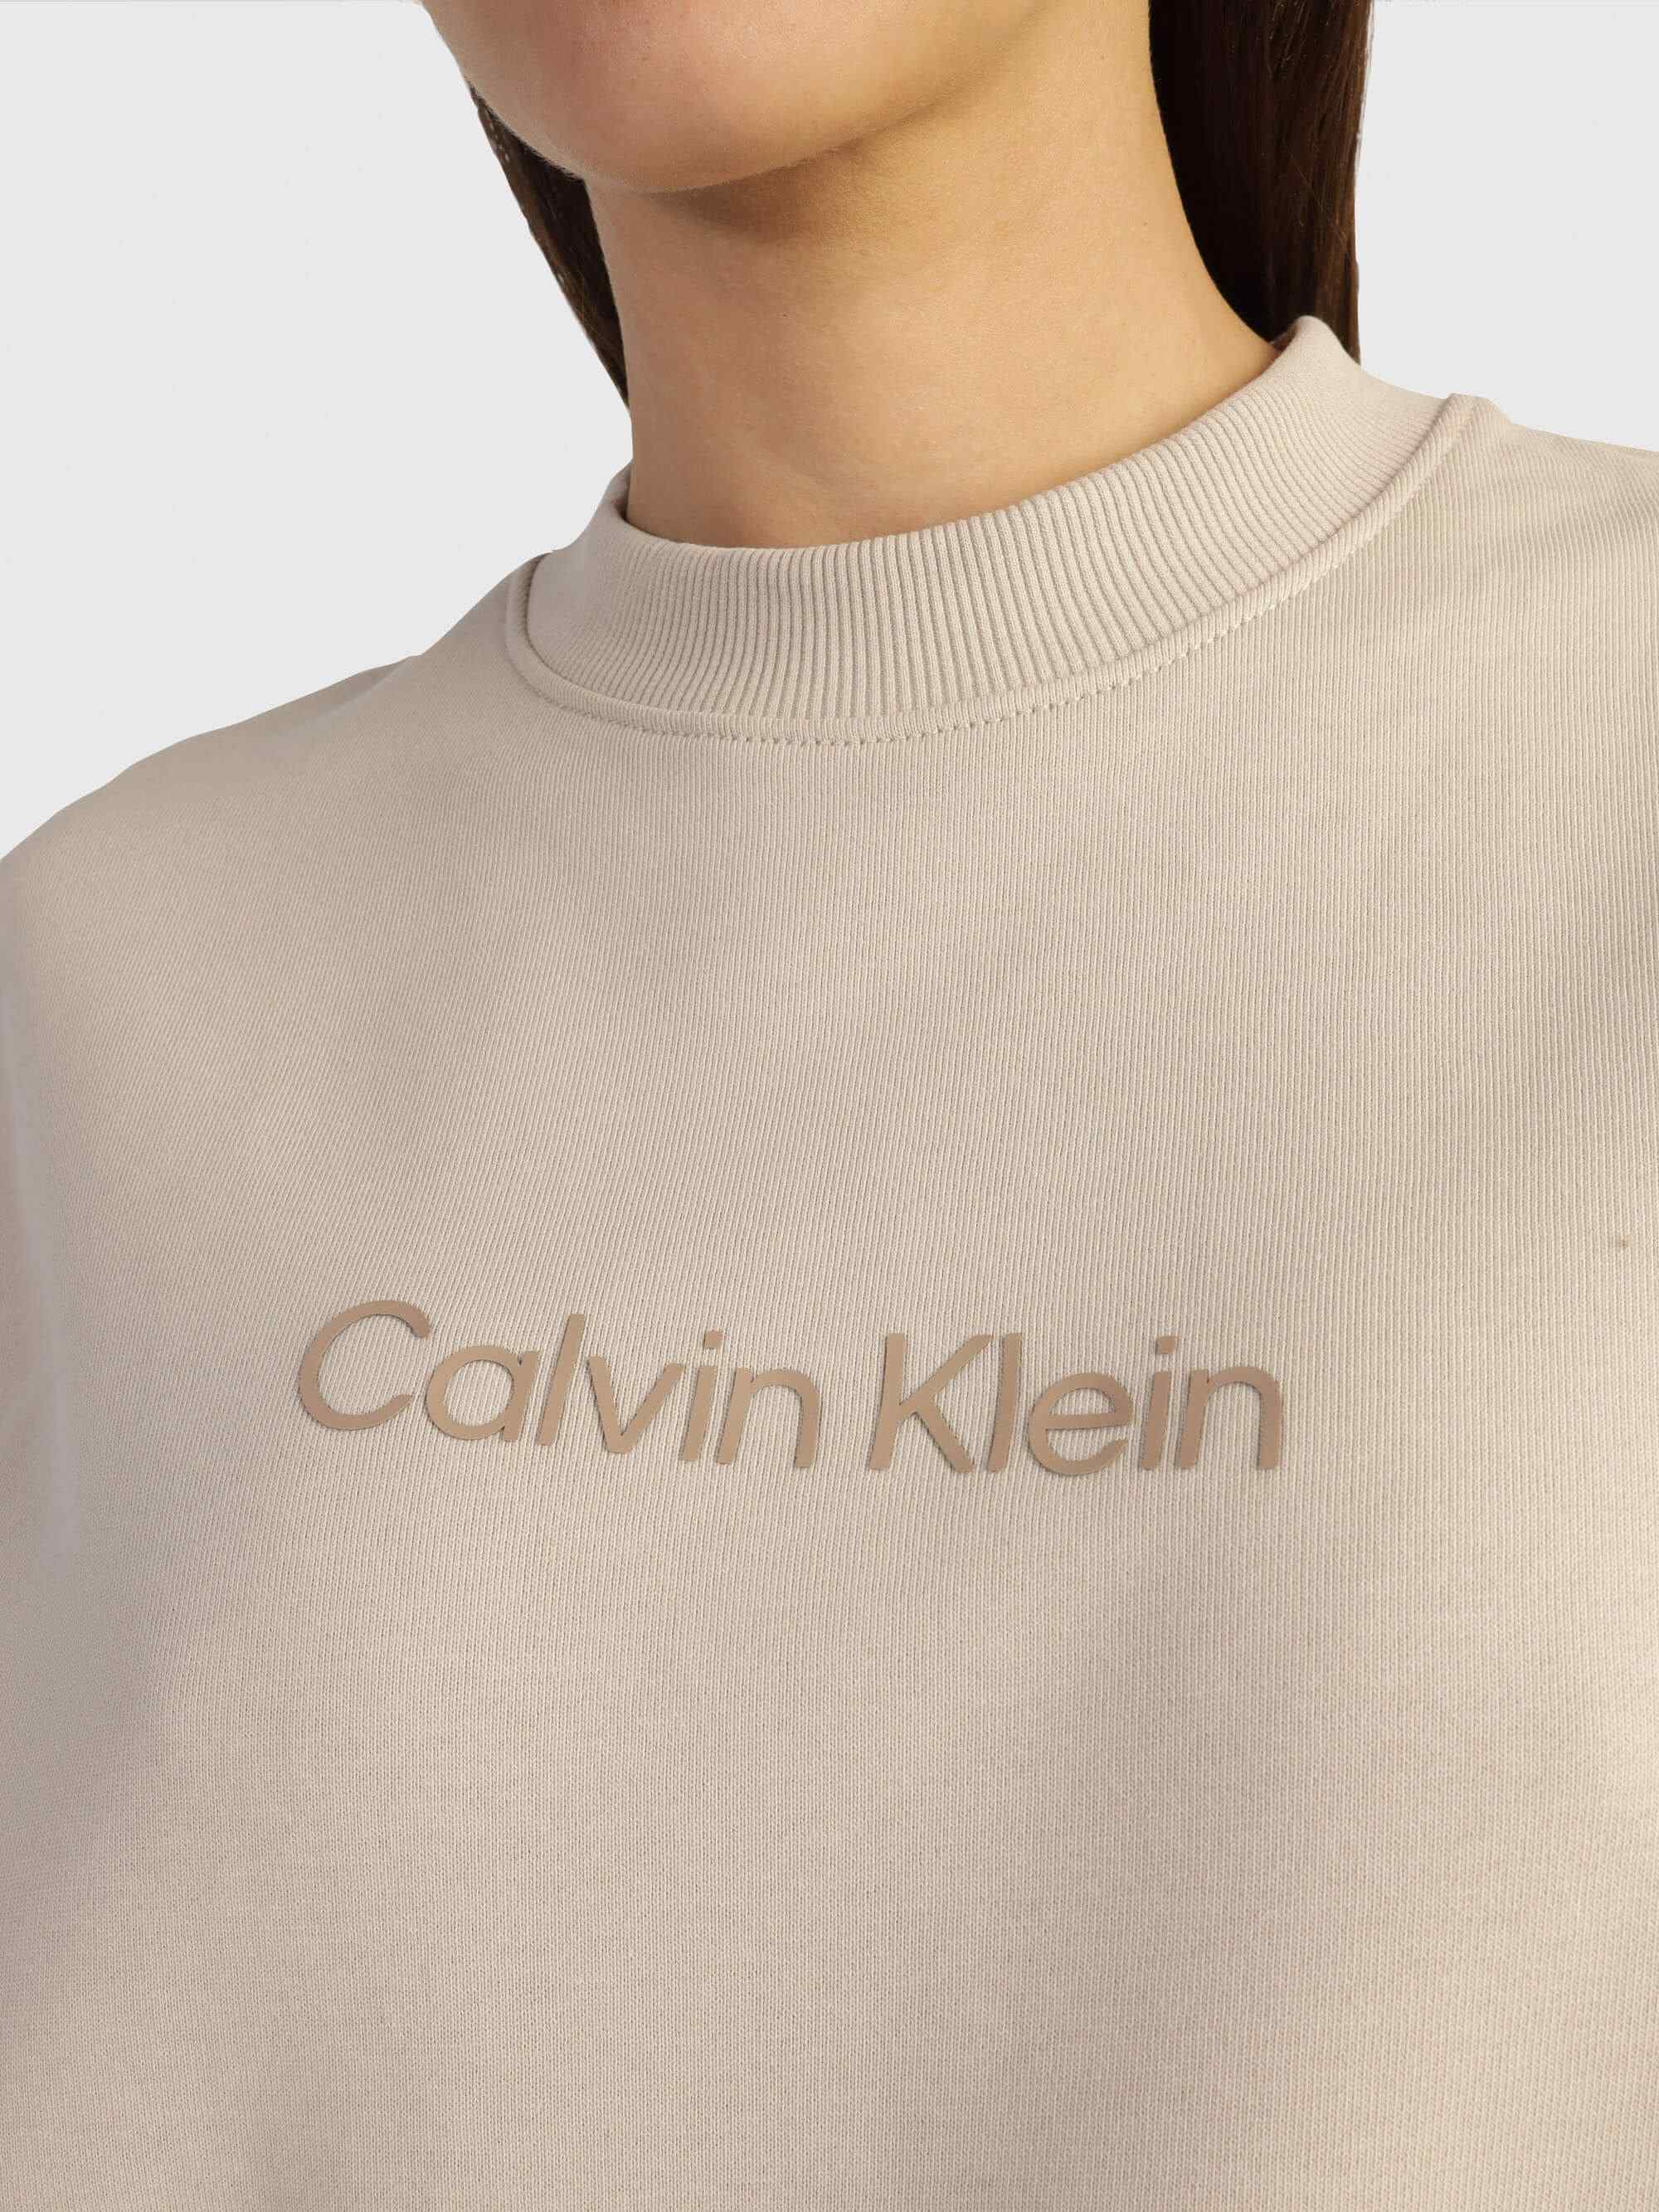 Sudadera Calvin Klein Mujer Beige